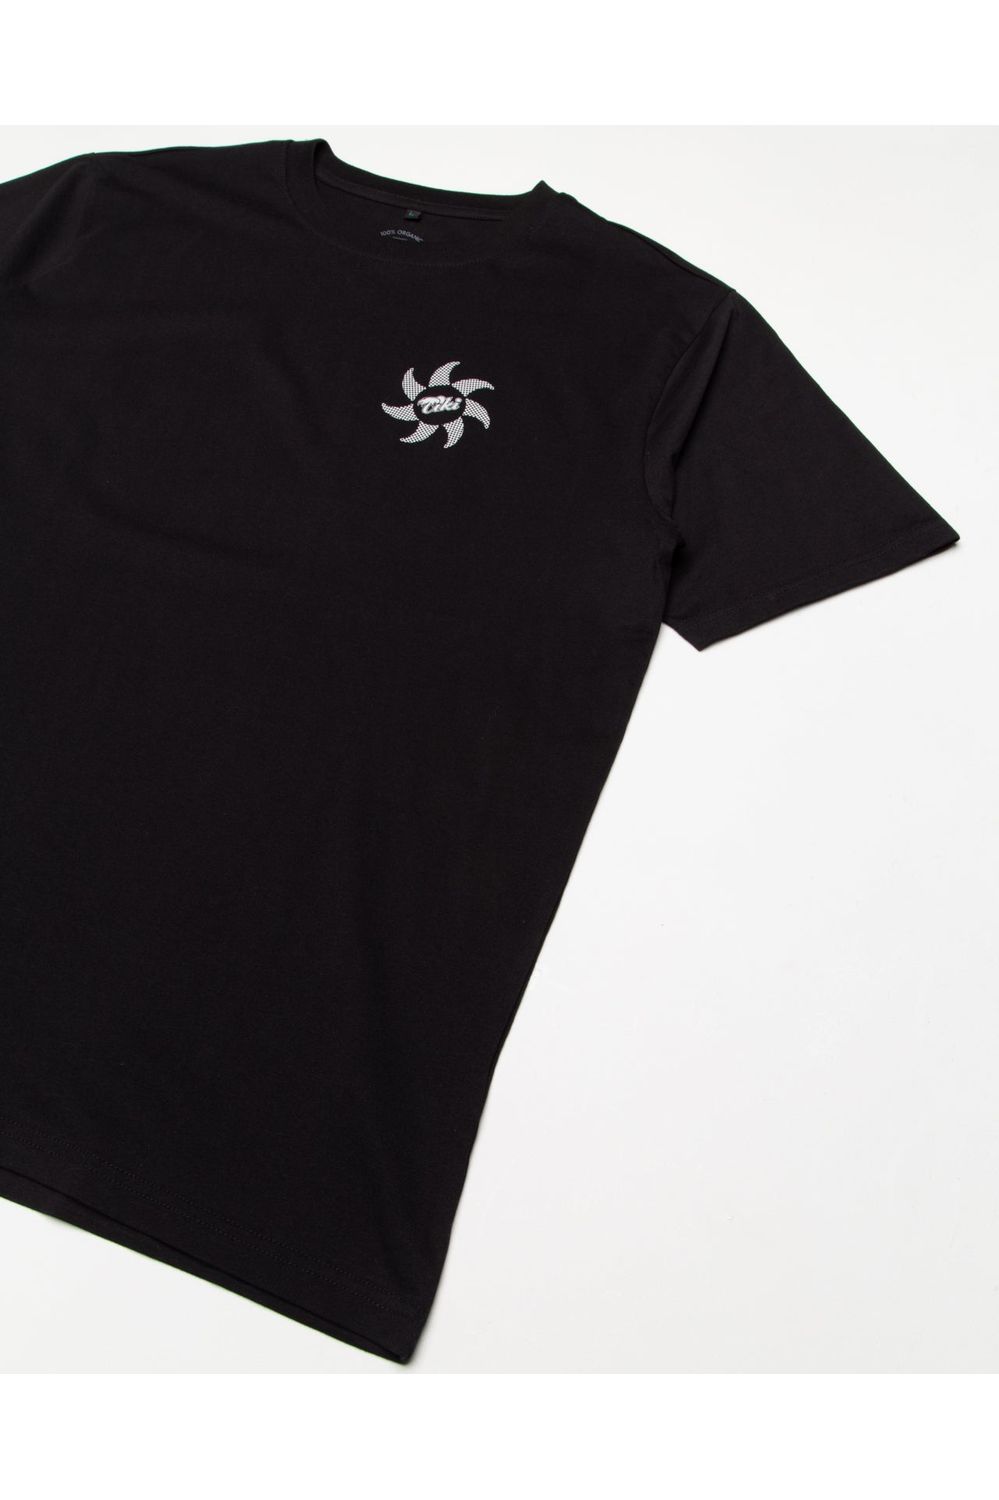 Tiki Manu T-Shirt Short Sleeve Black